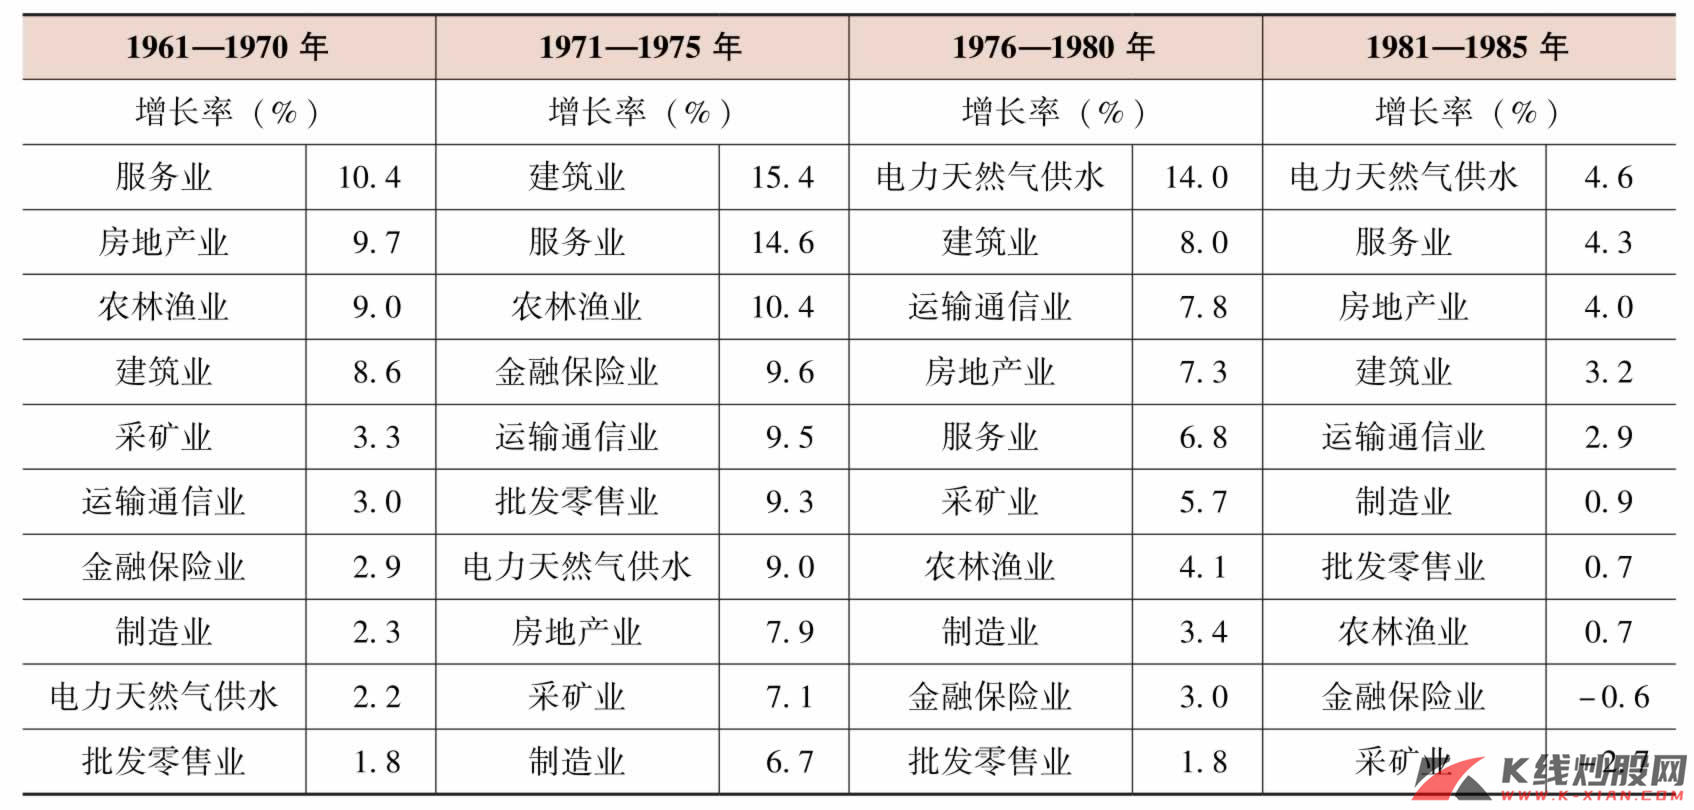 日本不同行业的平均增长率（以1990年价格为基准）